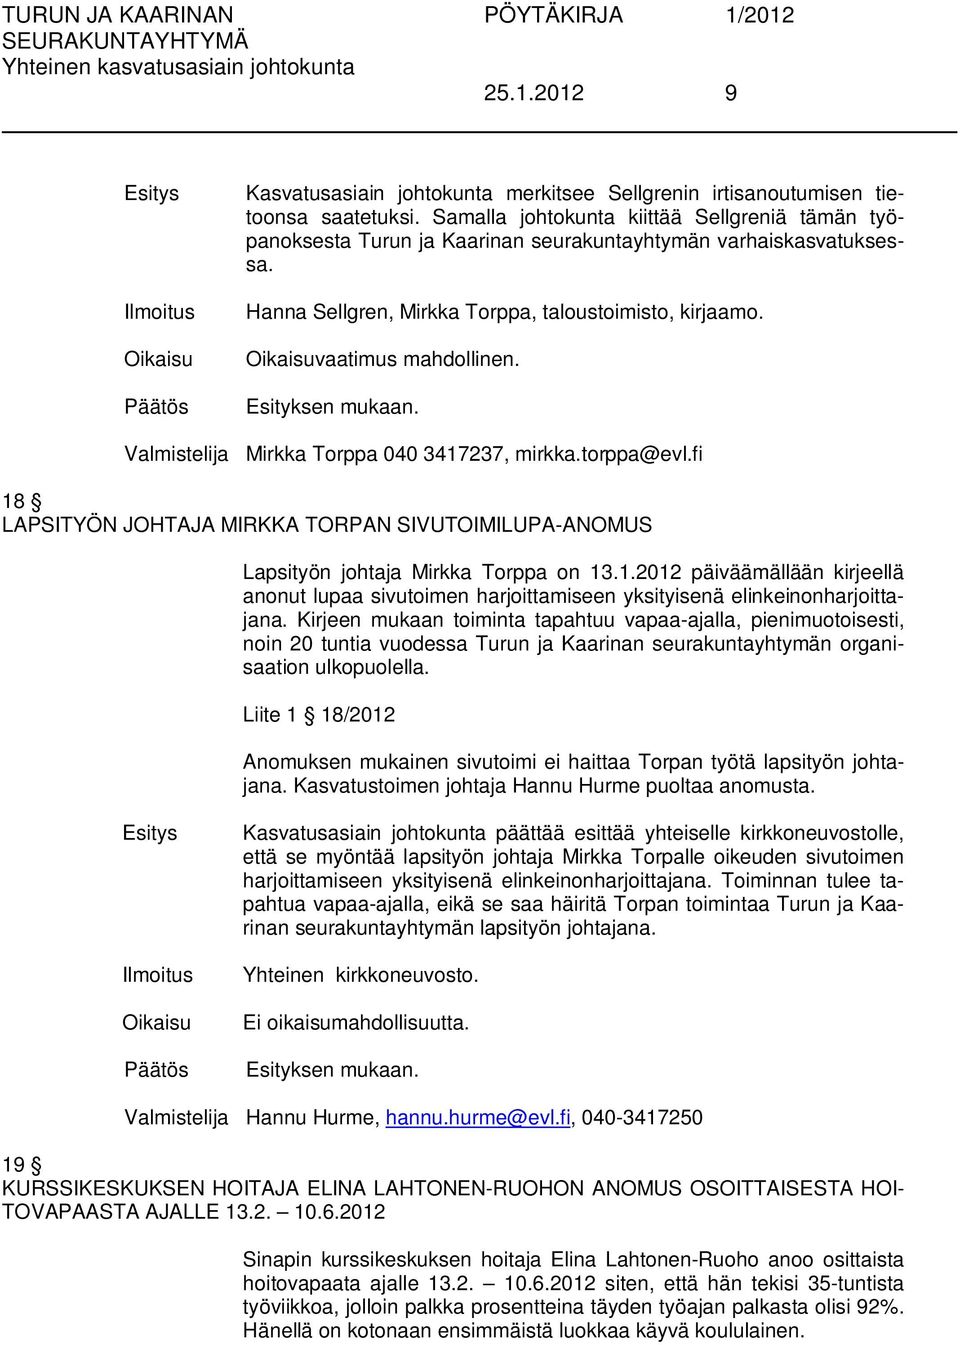 18 LAPSITYÖN JOHTAJA MIRKKA TORPAN SIVUTOIMILUPA-ANOMUS Lapsityön johtaja Mirkka Torppa on 13.1.2012 päiväämällään kirjeellä anonut lupaa sivutoimen harjoittamiseen yksityisenä elinkeinonharjoittajana.